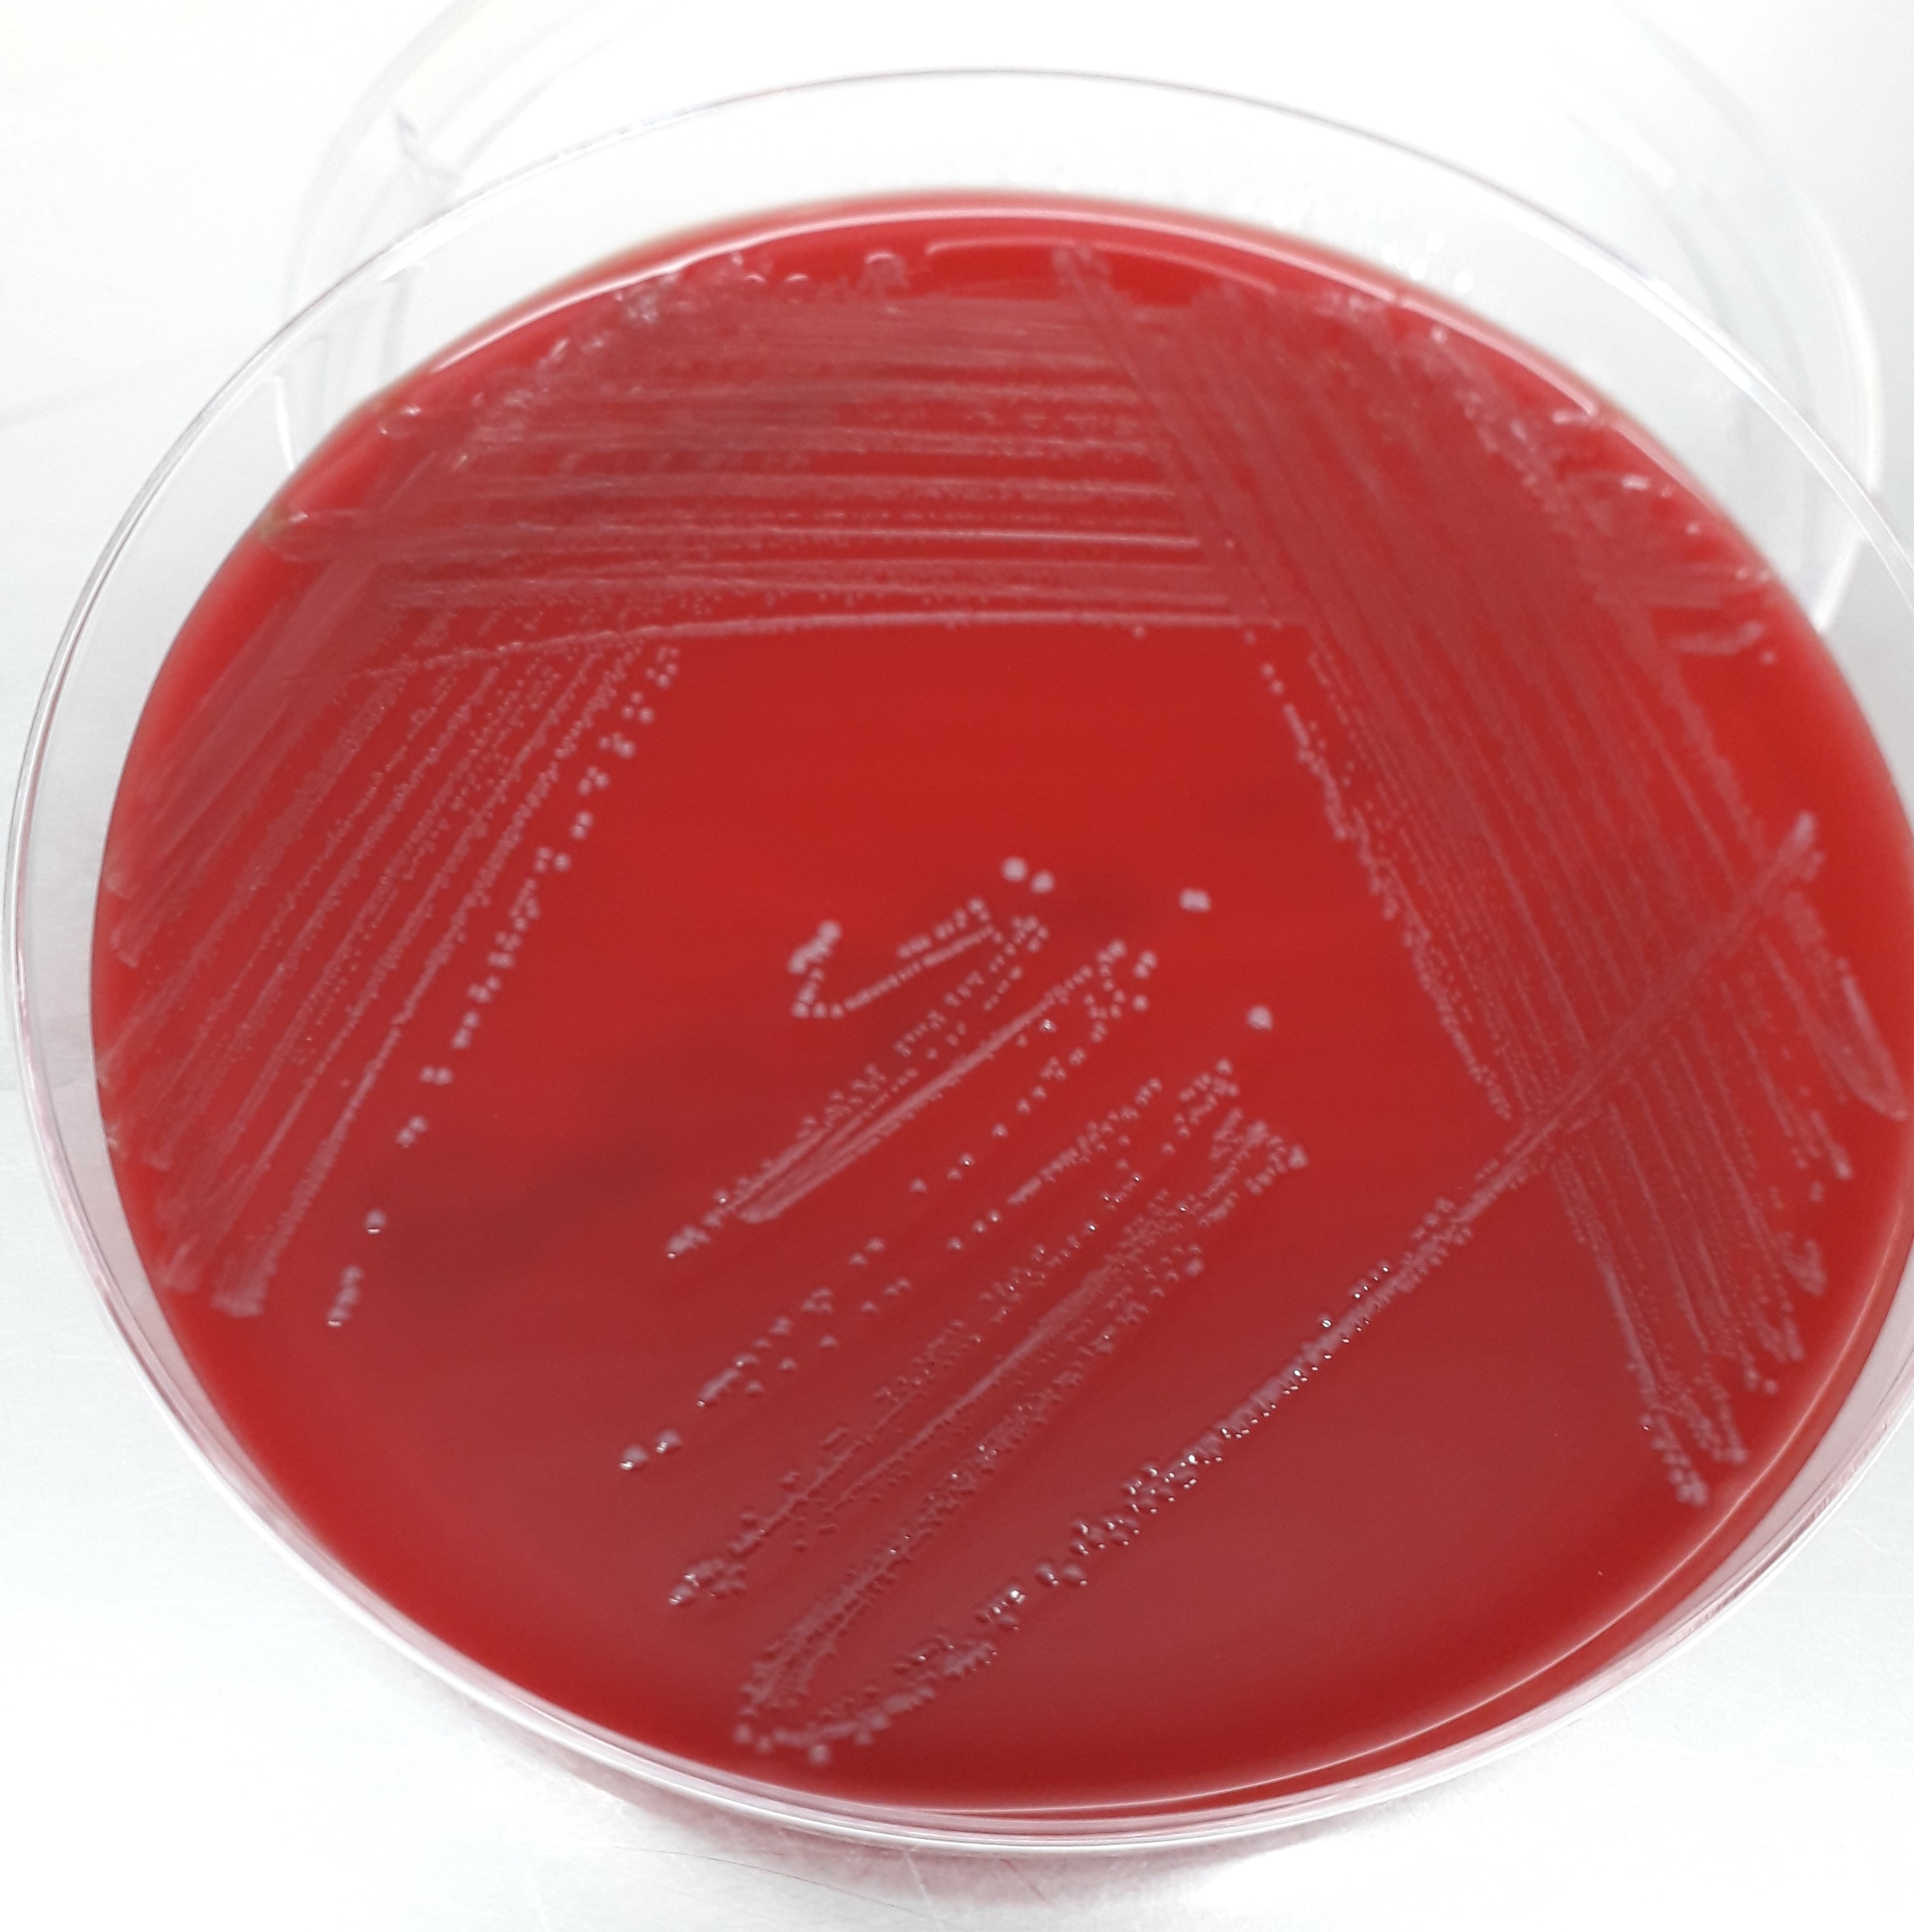 Importanza della batteriuria da Enterococcus spp. nel cane 